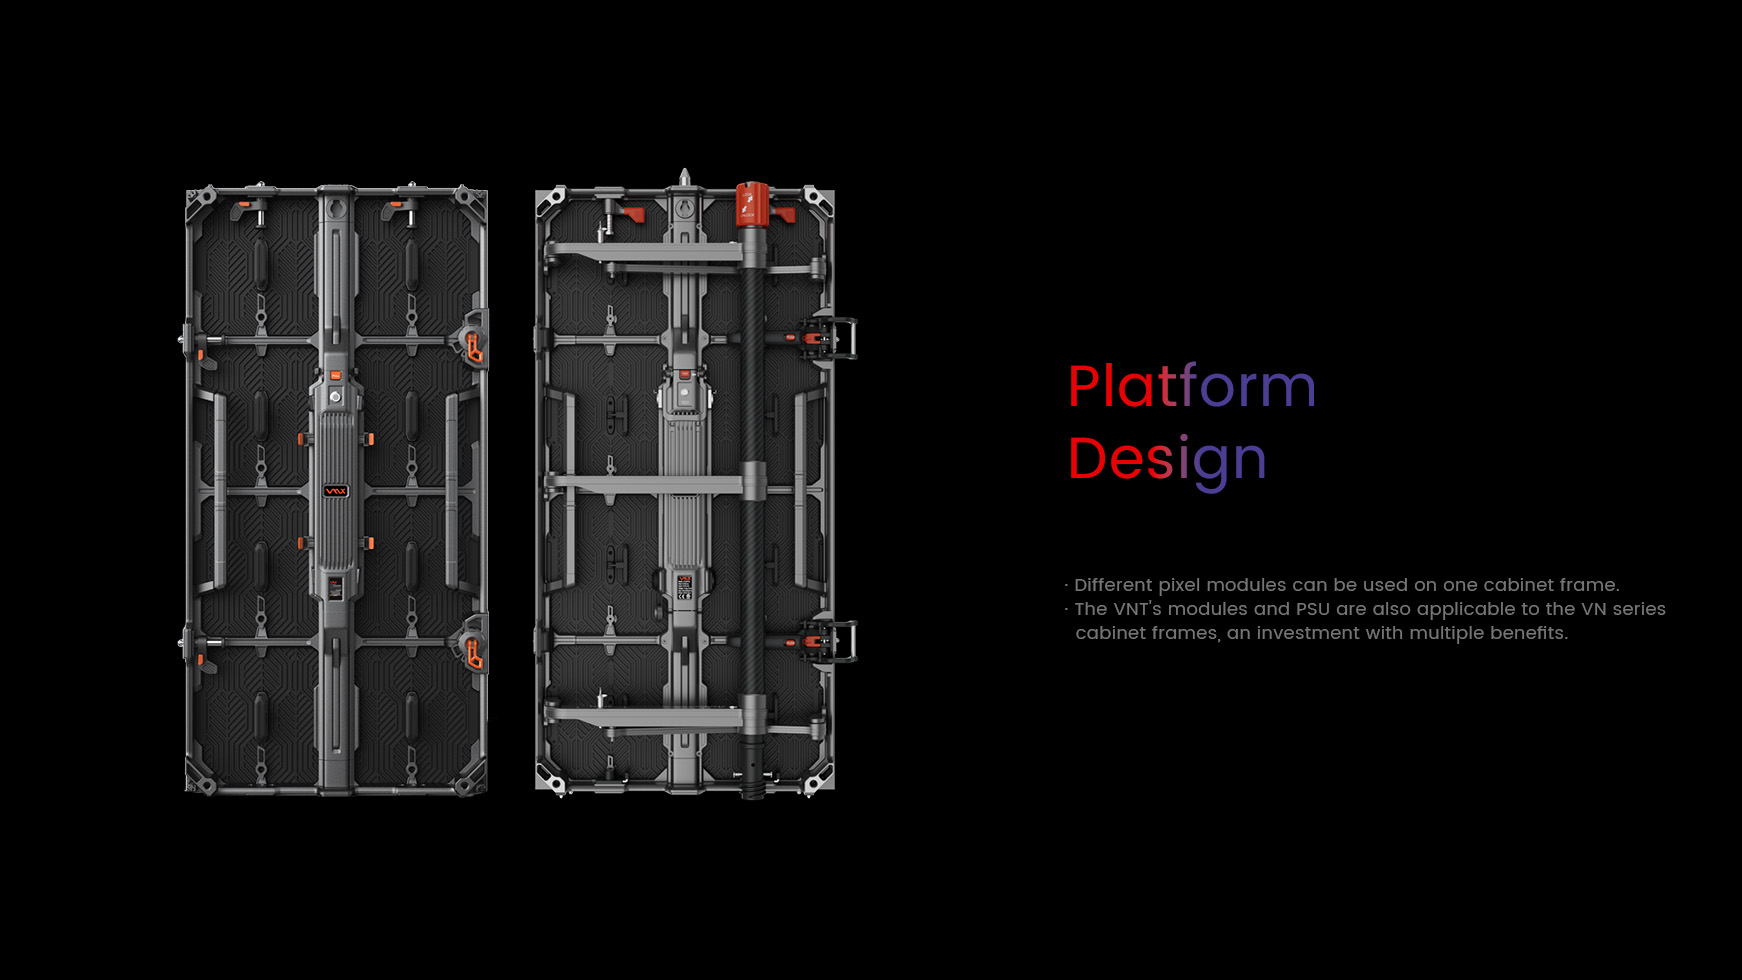 Platform Design